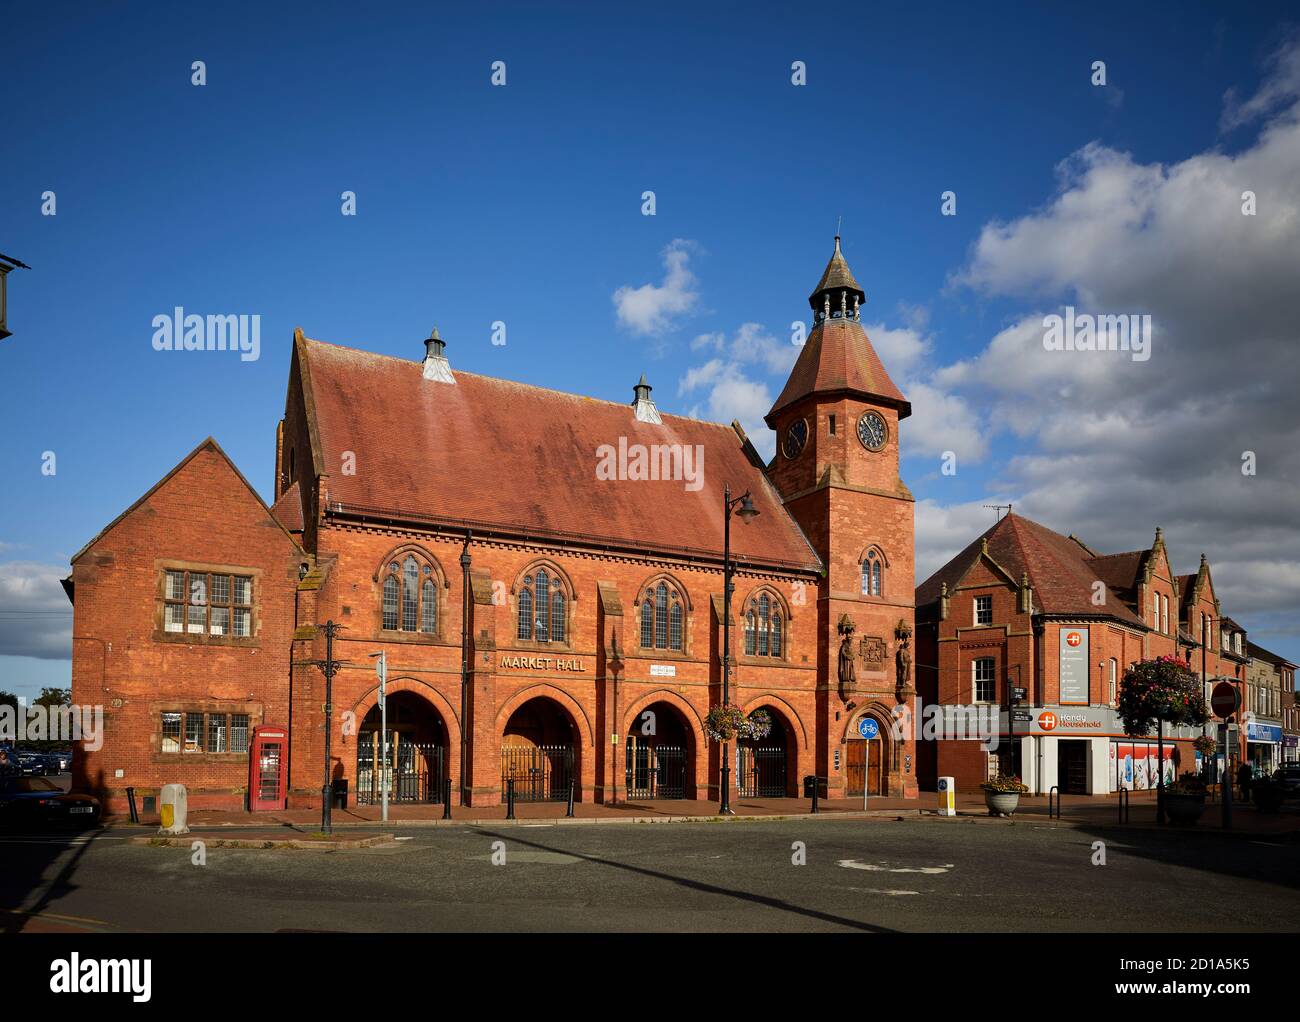 Sandbach marché ville Cheshire, Angleterre, hôtel de marché et hôtel de ville bâtiment en brique rouge conçu par Thomas Bower dans le style gothique de renouveau Grade II Banque D'Images